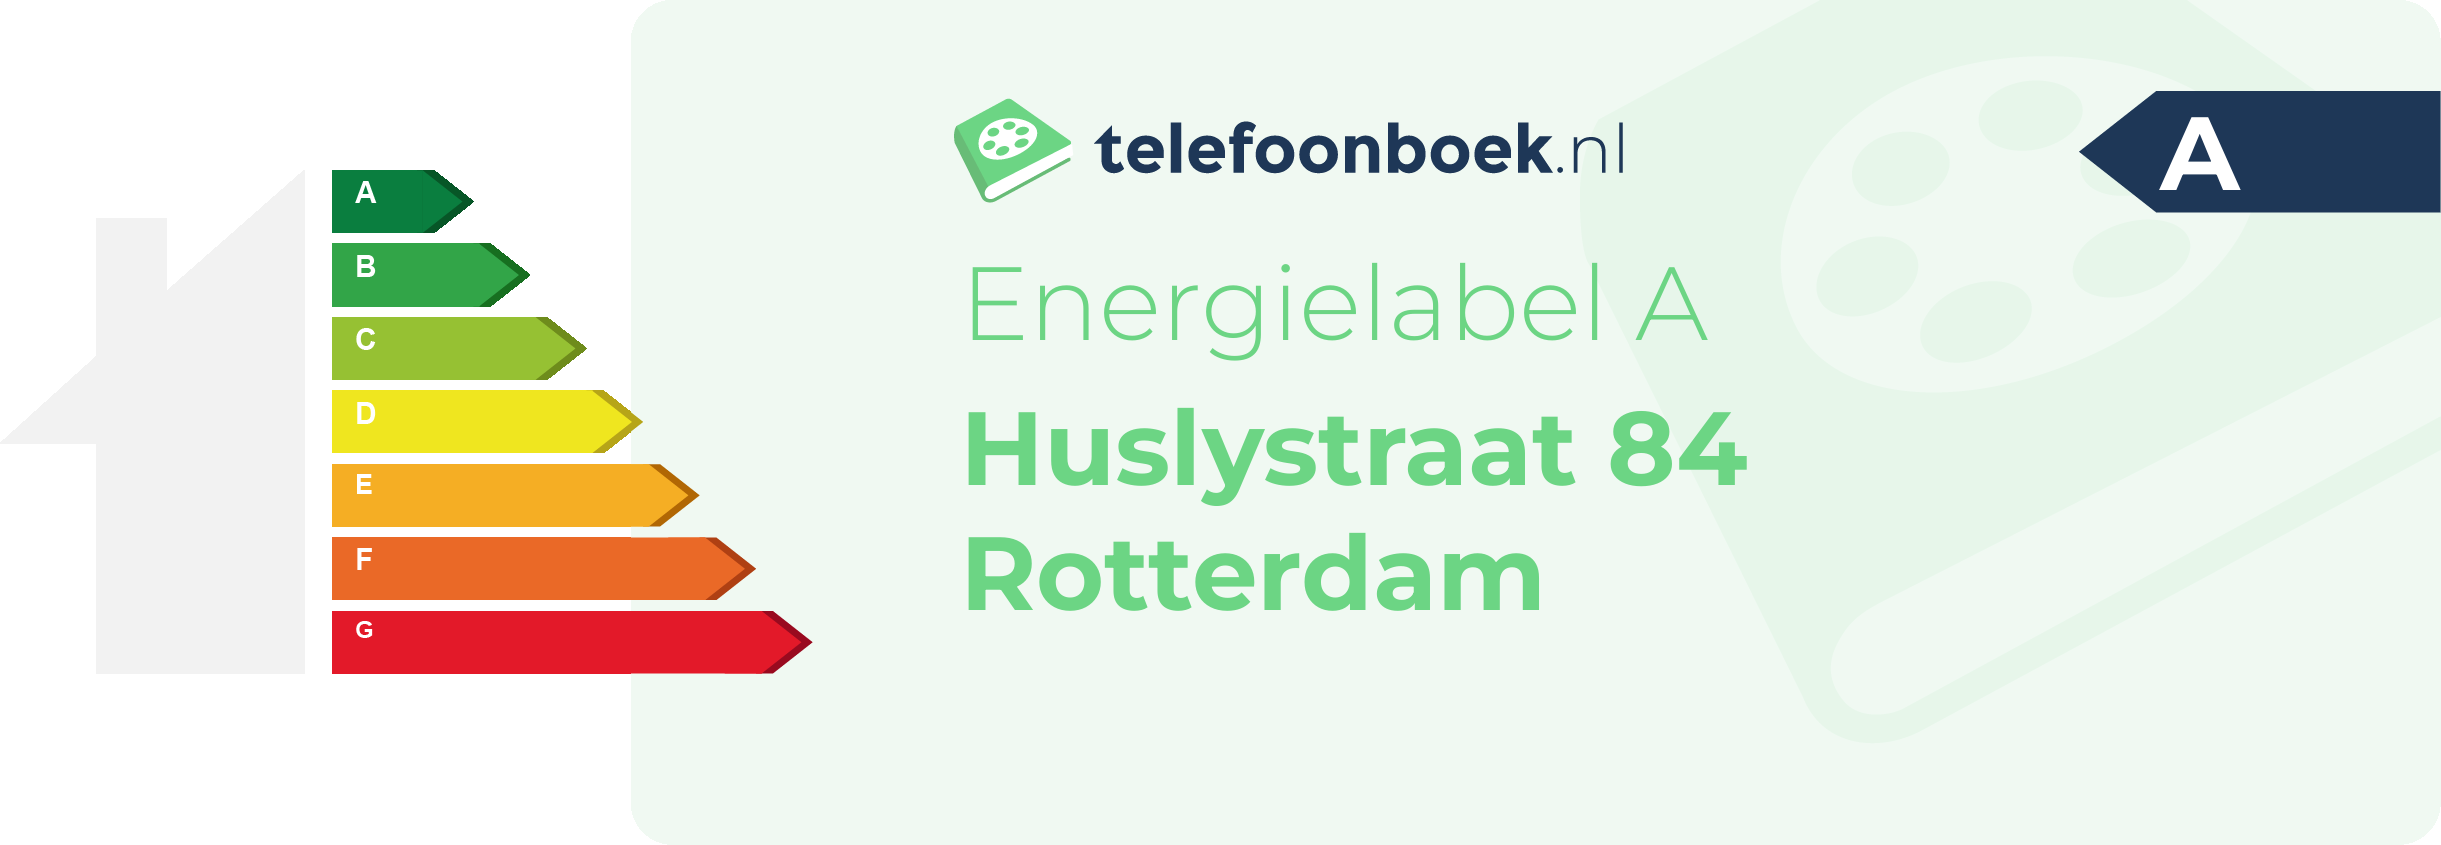 Energielabel Huslystraat 84 Rotterdam